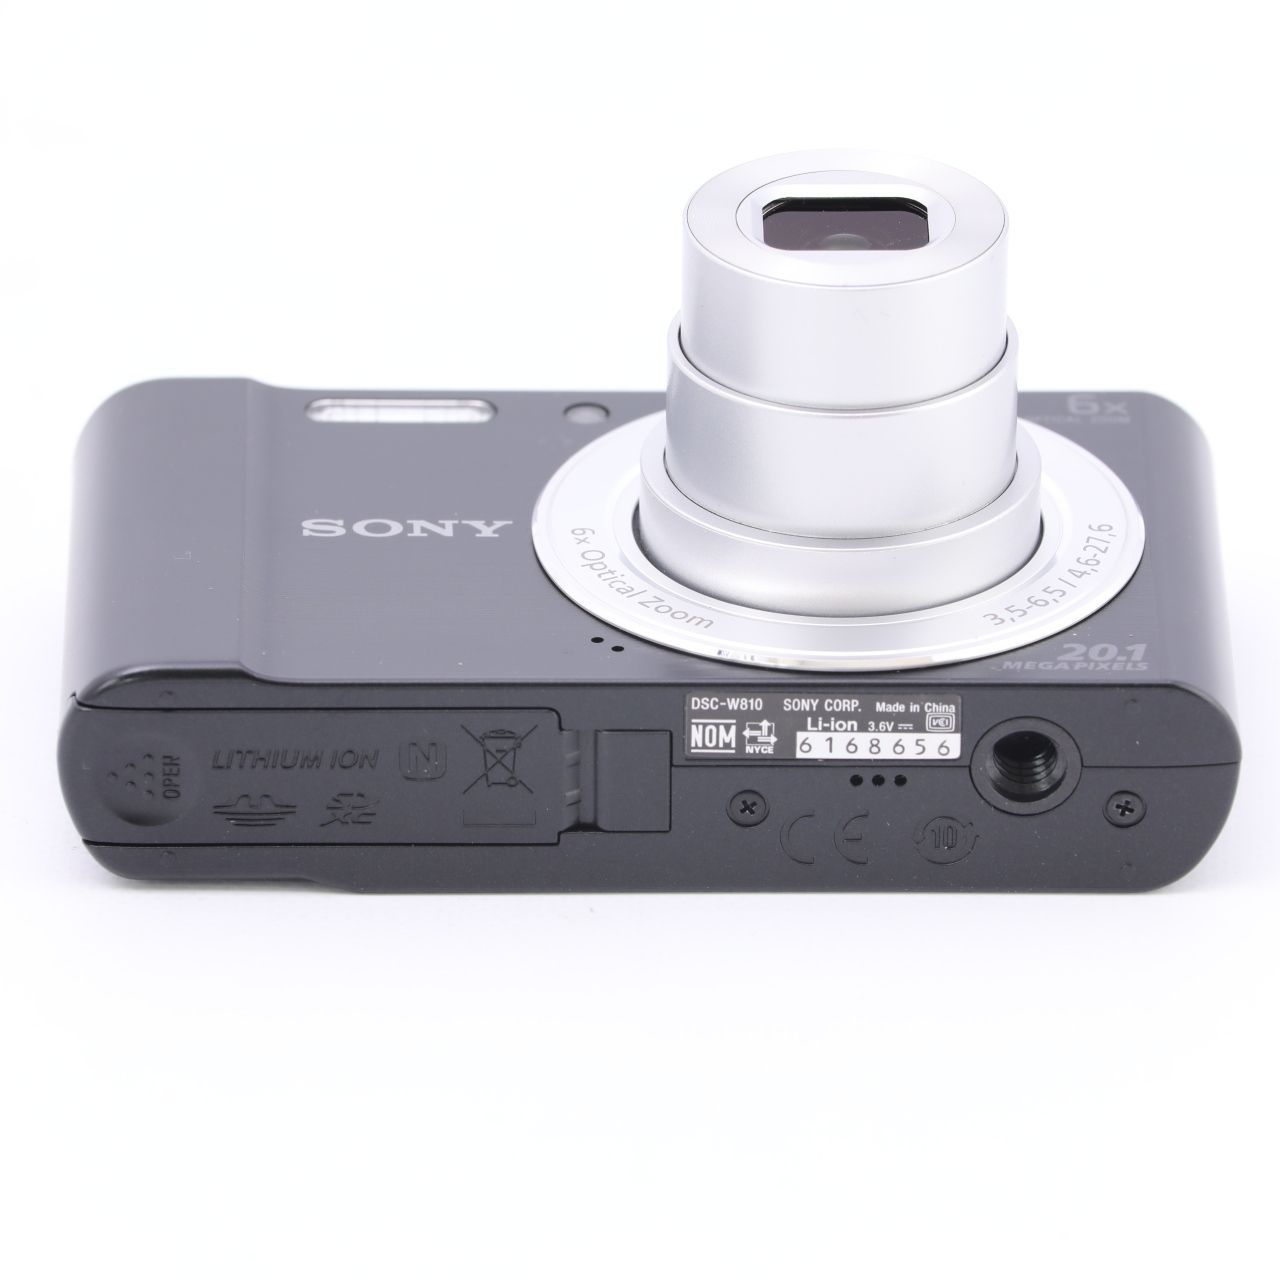 ソニー SONY デジタルカメラ Cyber-shot W810 光学6倍 ブラック DSC-W810-B(品)